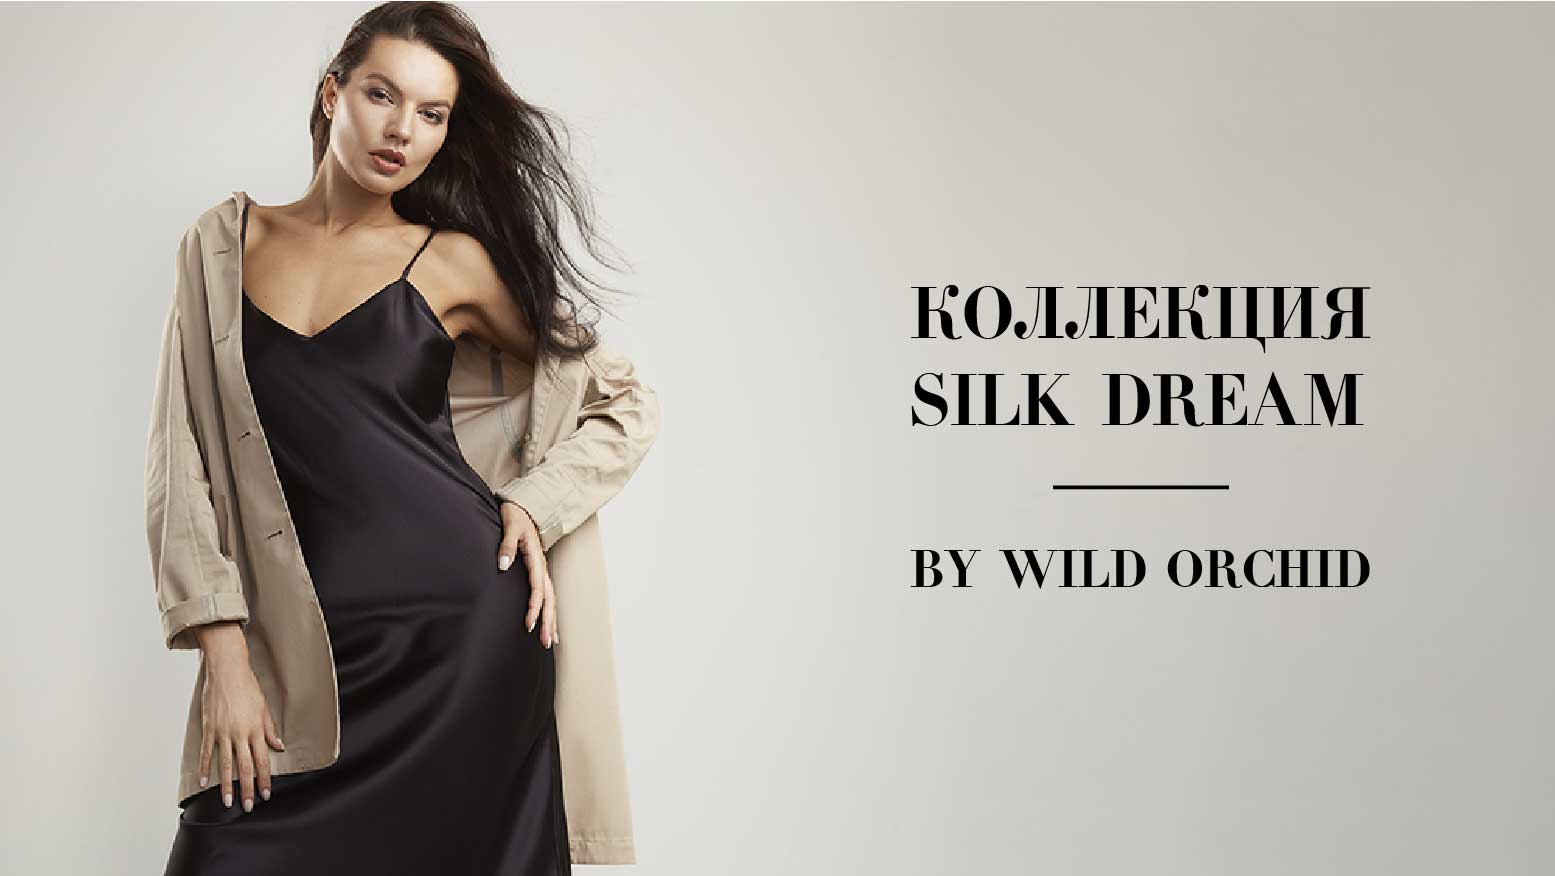 Сыграйте на контрастах в идеальной одежде Silk Dream от WILD ORCHID!